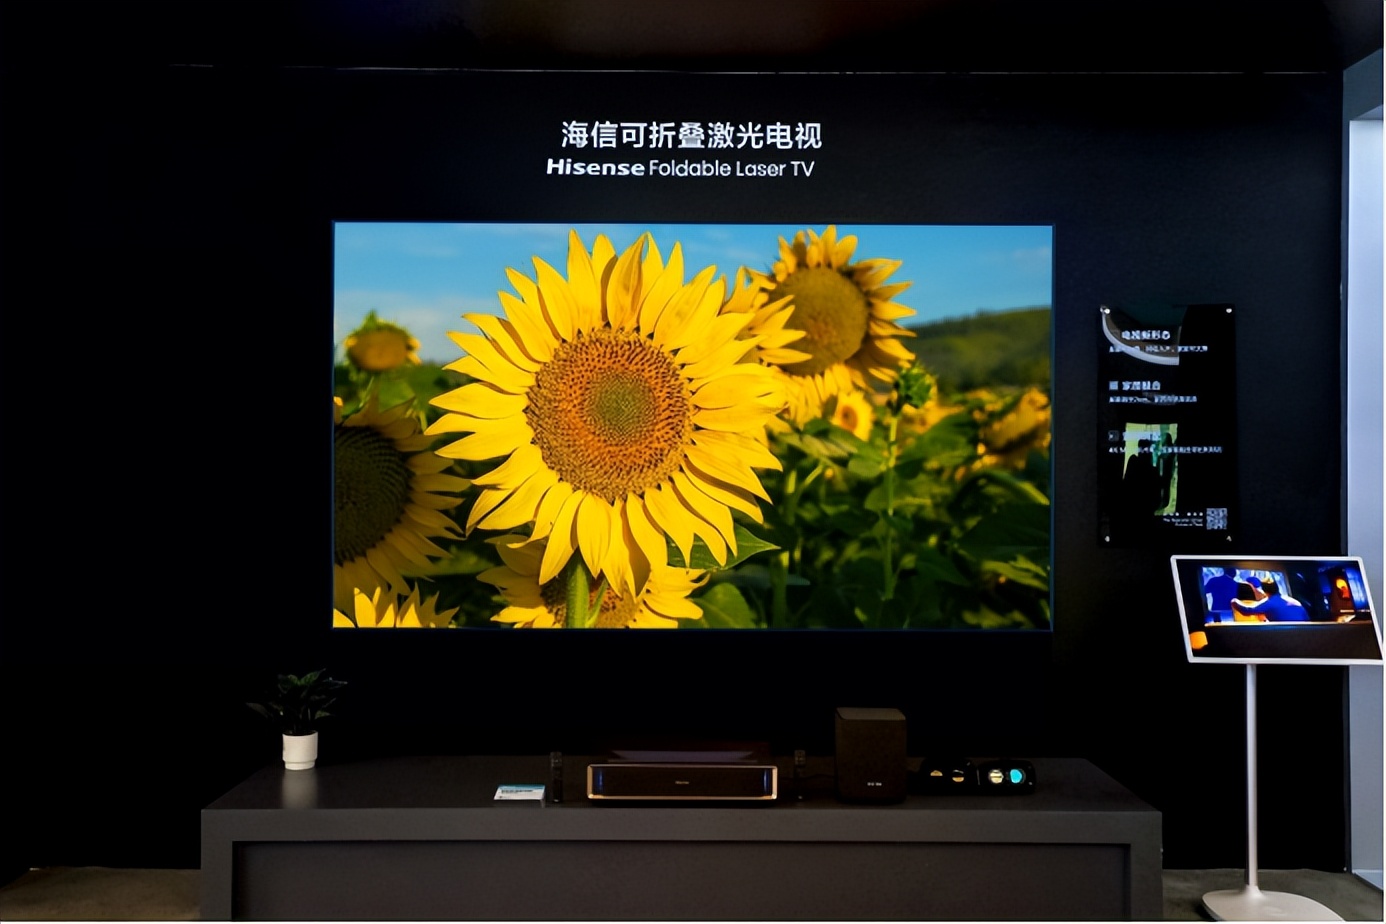 海信在awe上展出全球首款可折叠激光电视,全球首款8k屏幕发声激光电视